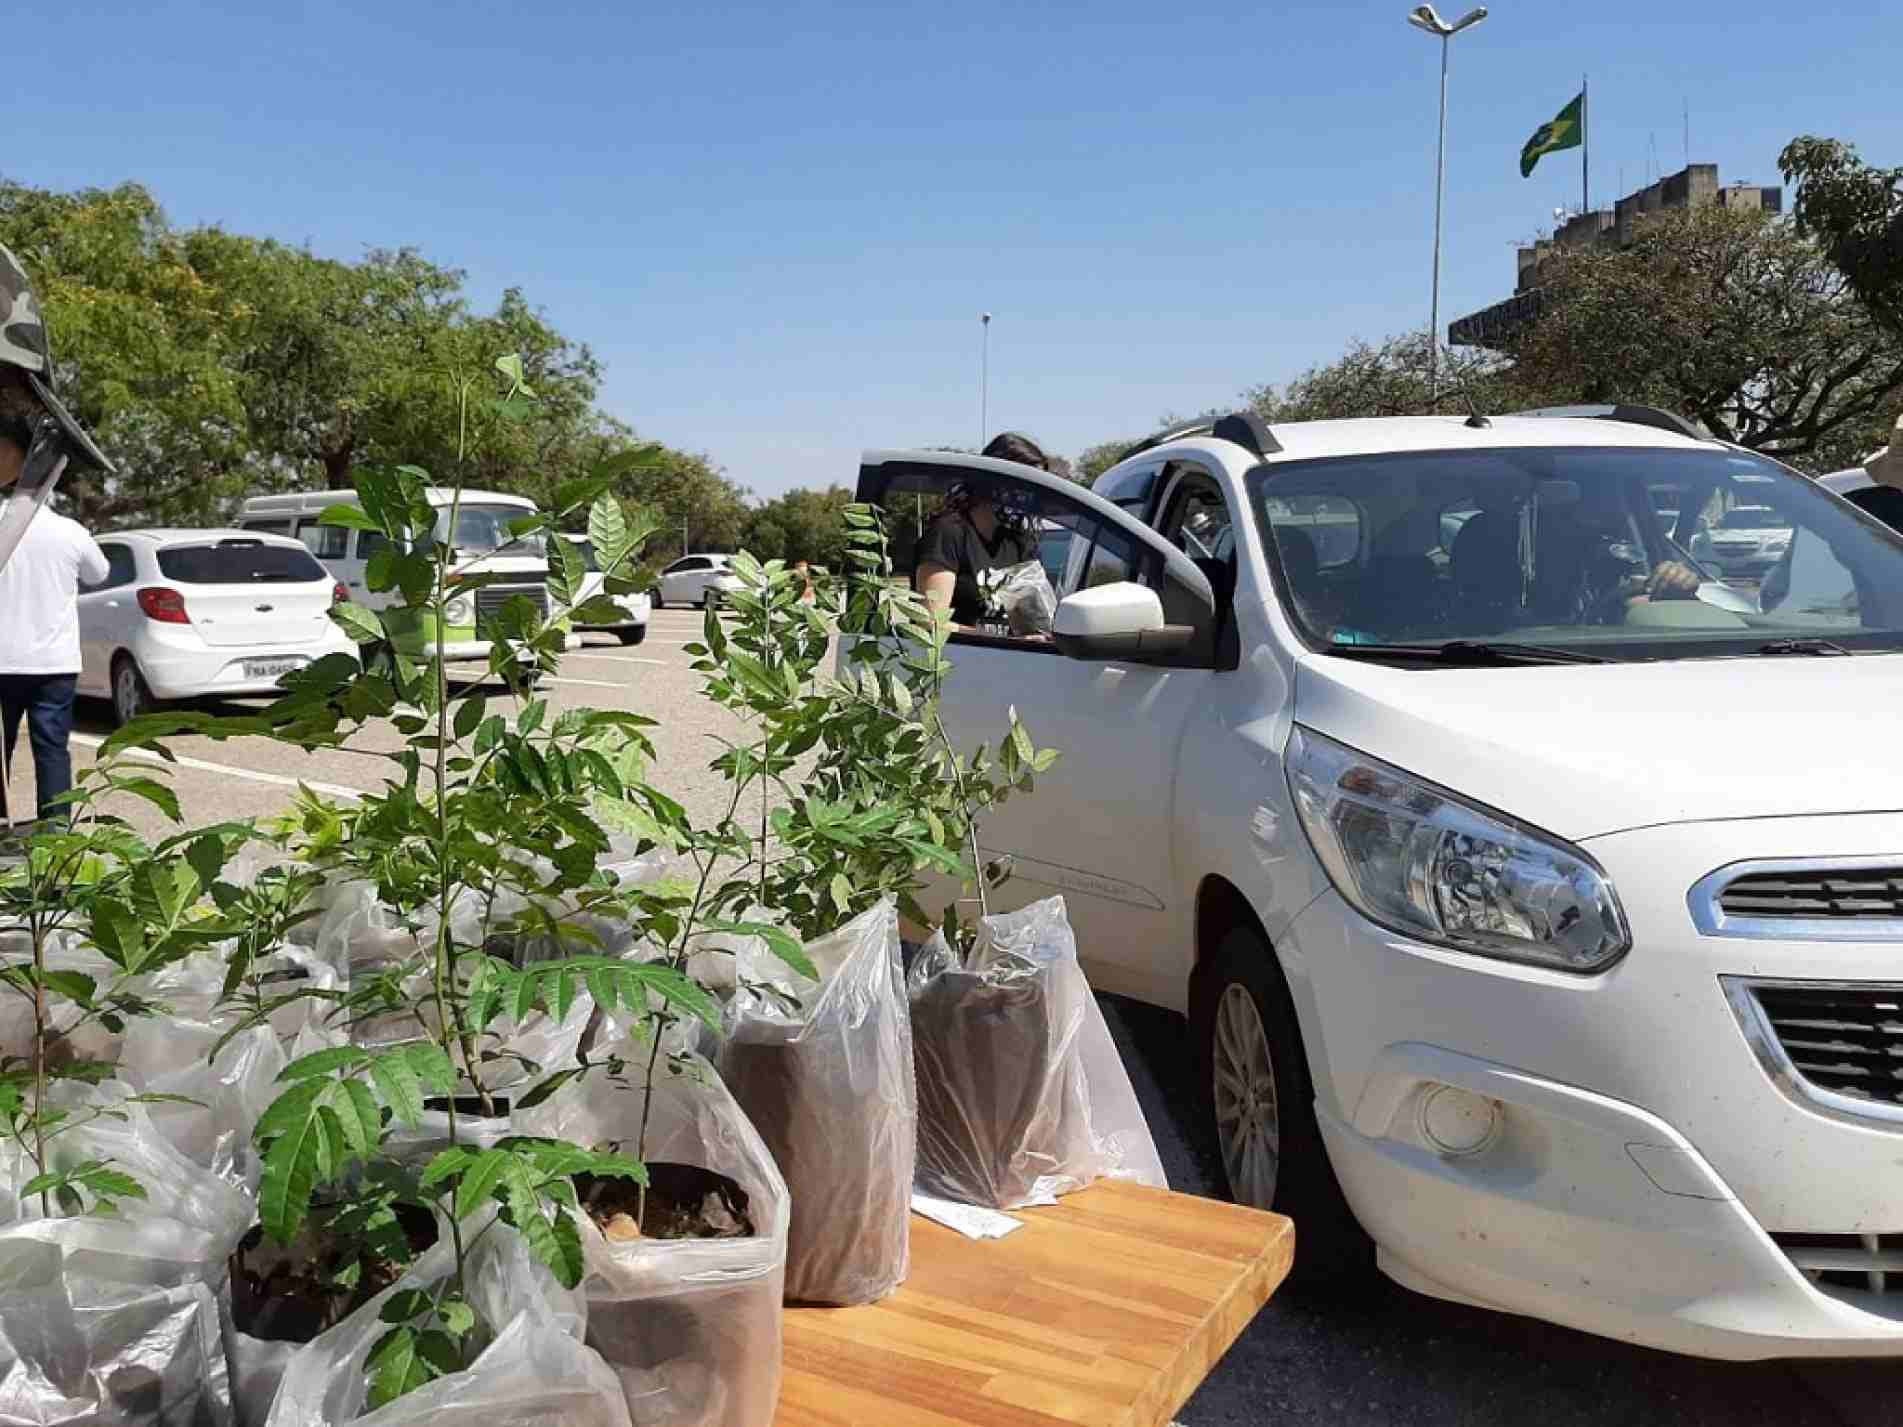 Entre outros serviços, drive-thru sustentável no Paço vai distribuir três mil mudas de árvores
